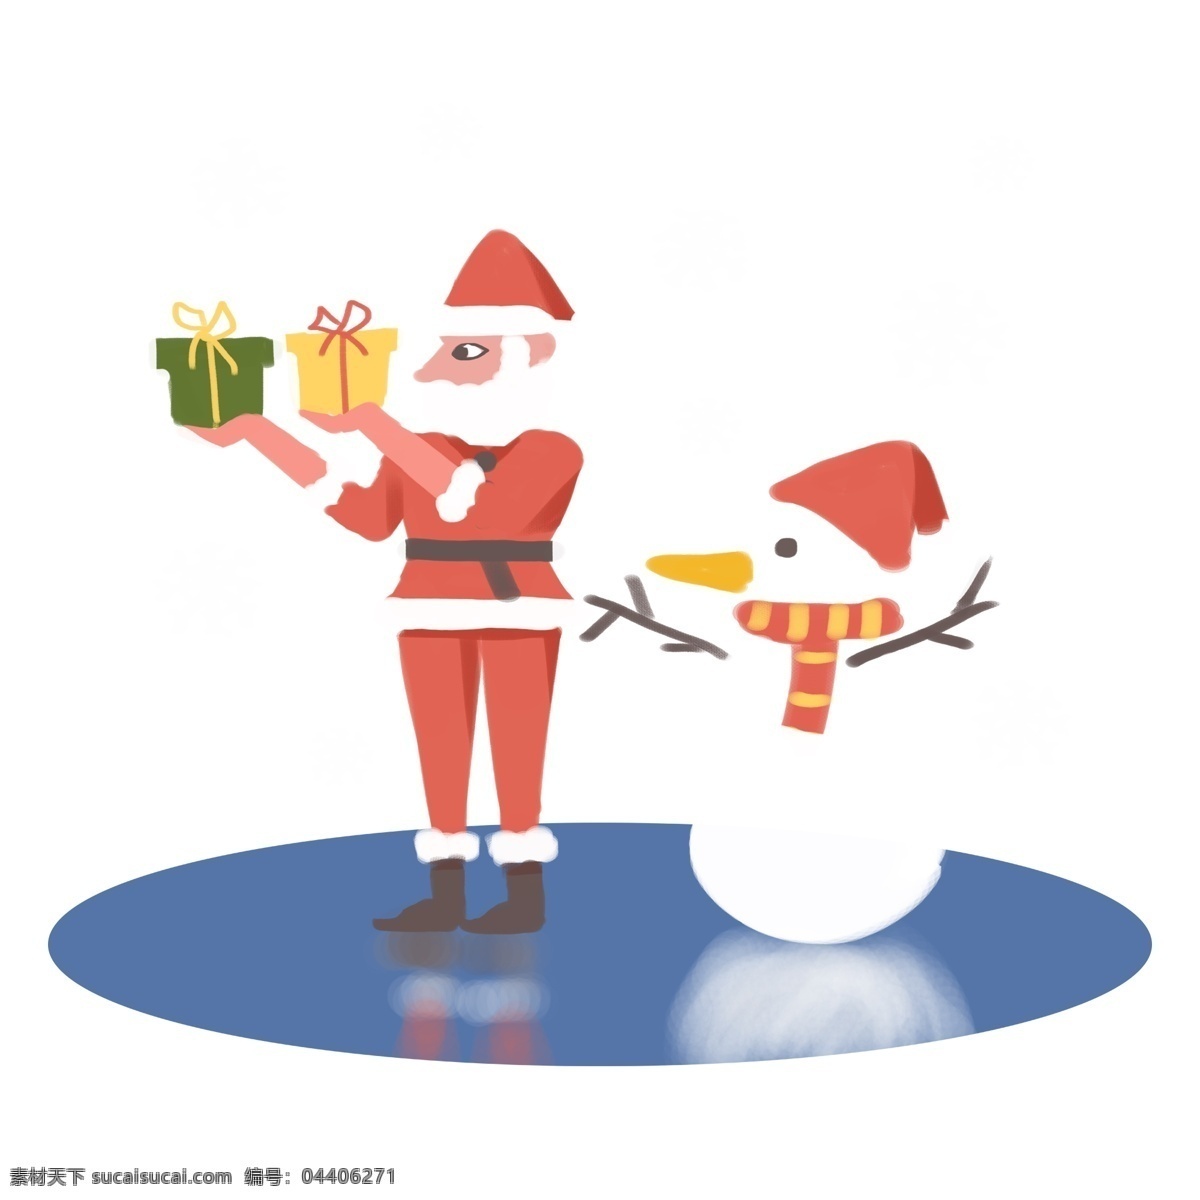 卡通 手绘 扁平 雪天 圣诞节 圣诞老人 雪人 冰面 送礼 物 侧面 卡通扁平 卡通雪人 卡通圣诞 送礼物 湖面